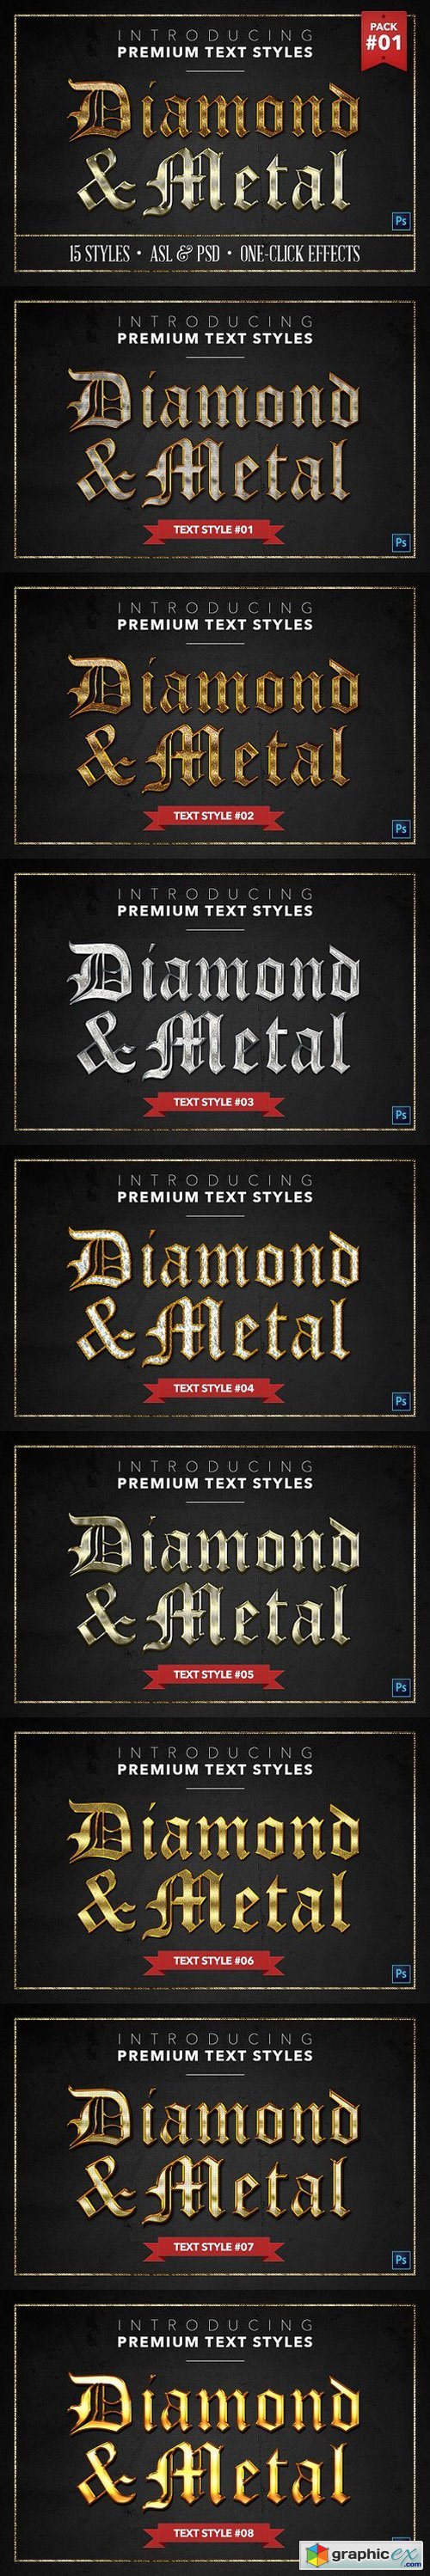 Diamond & Metal #1 - 15 Styles